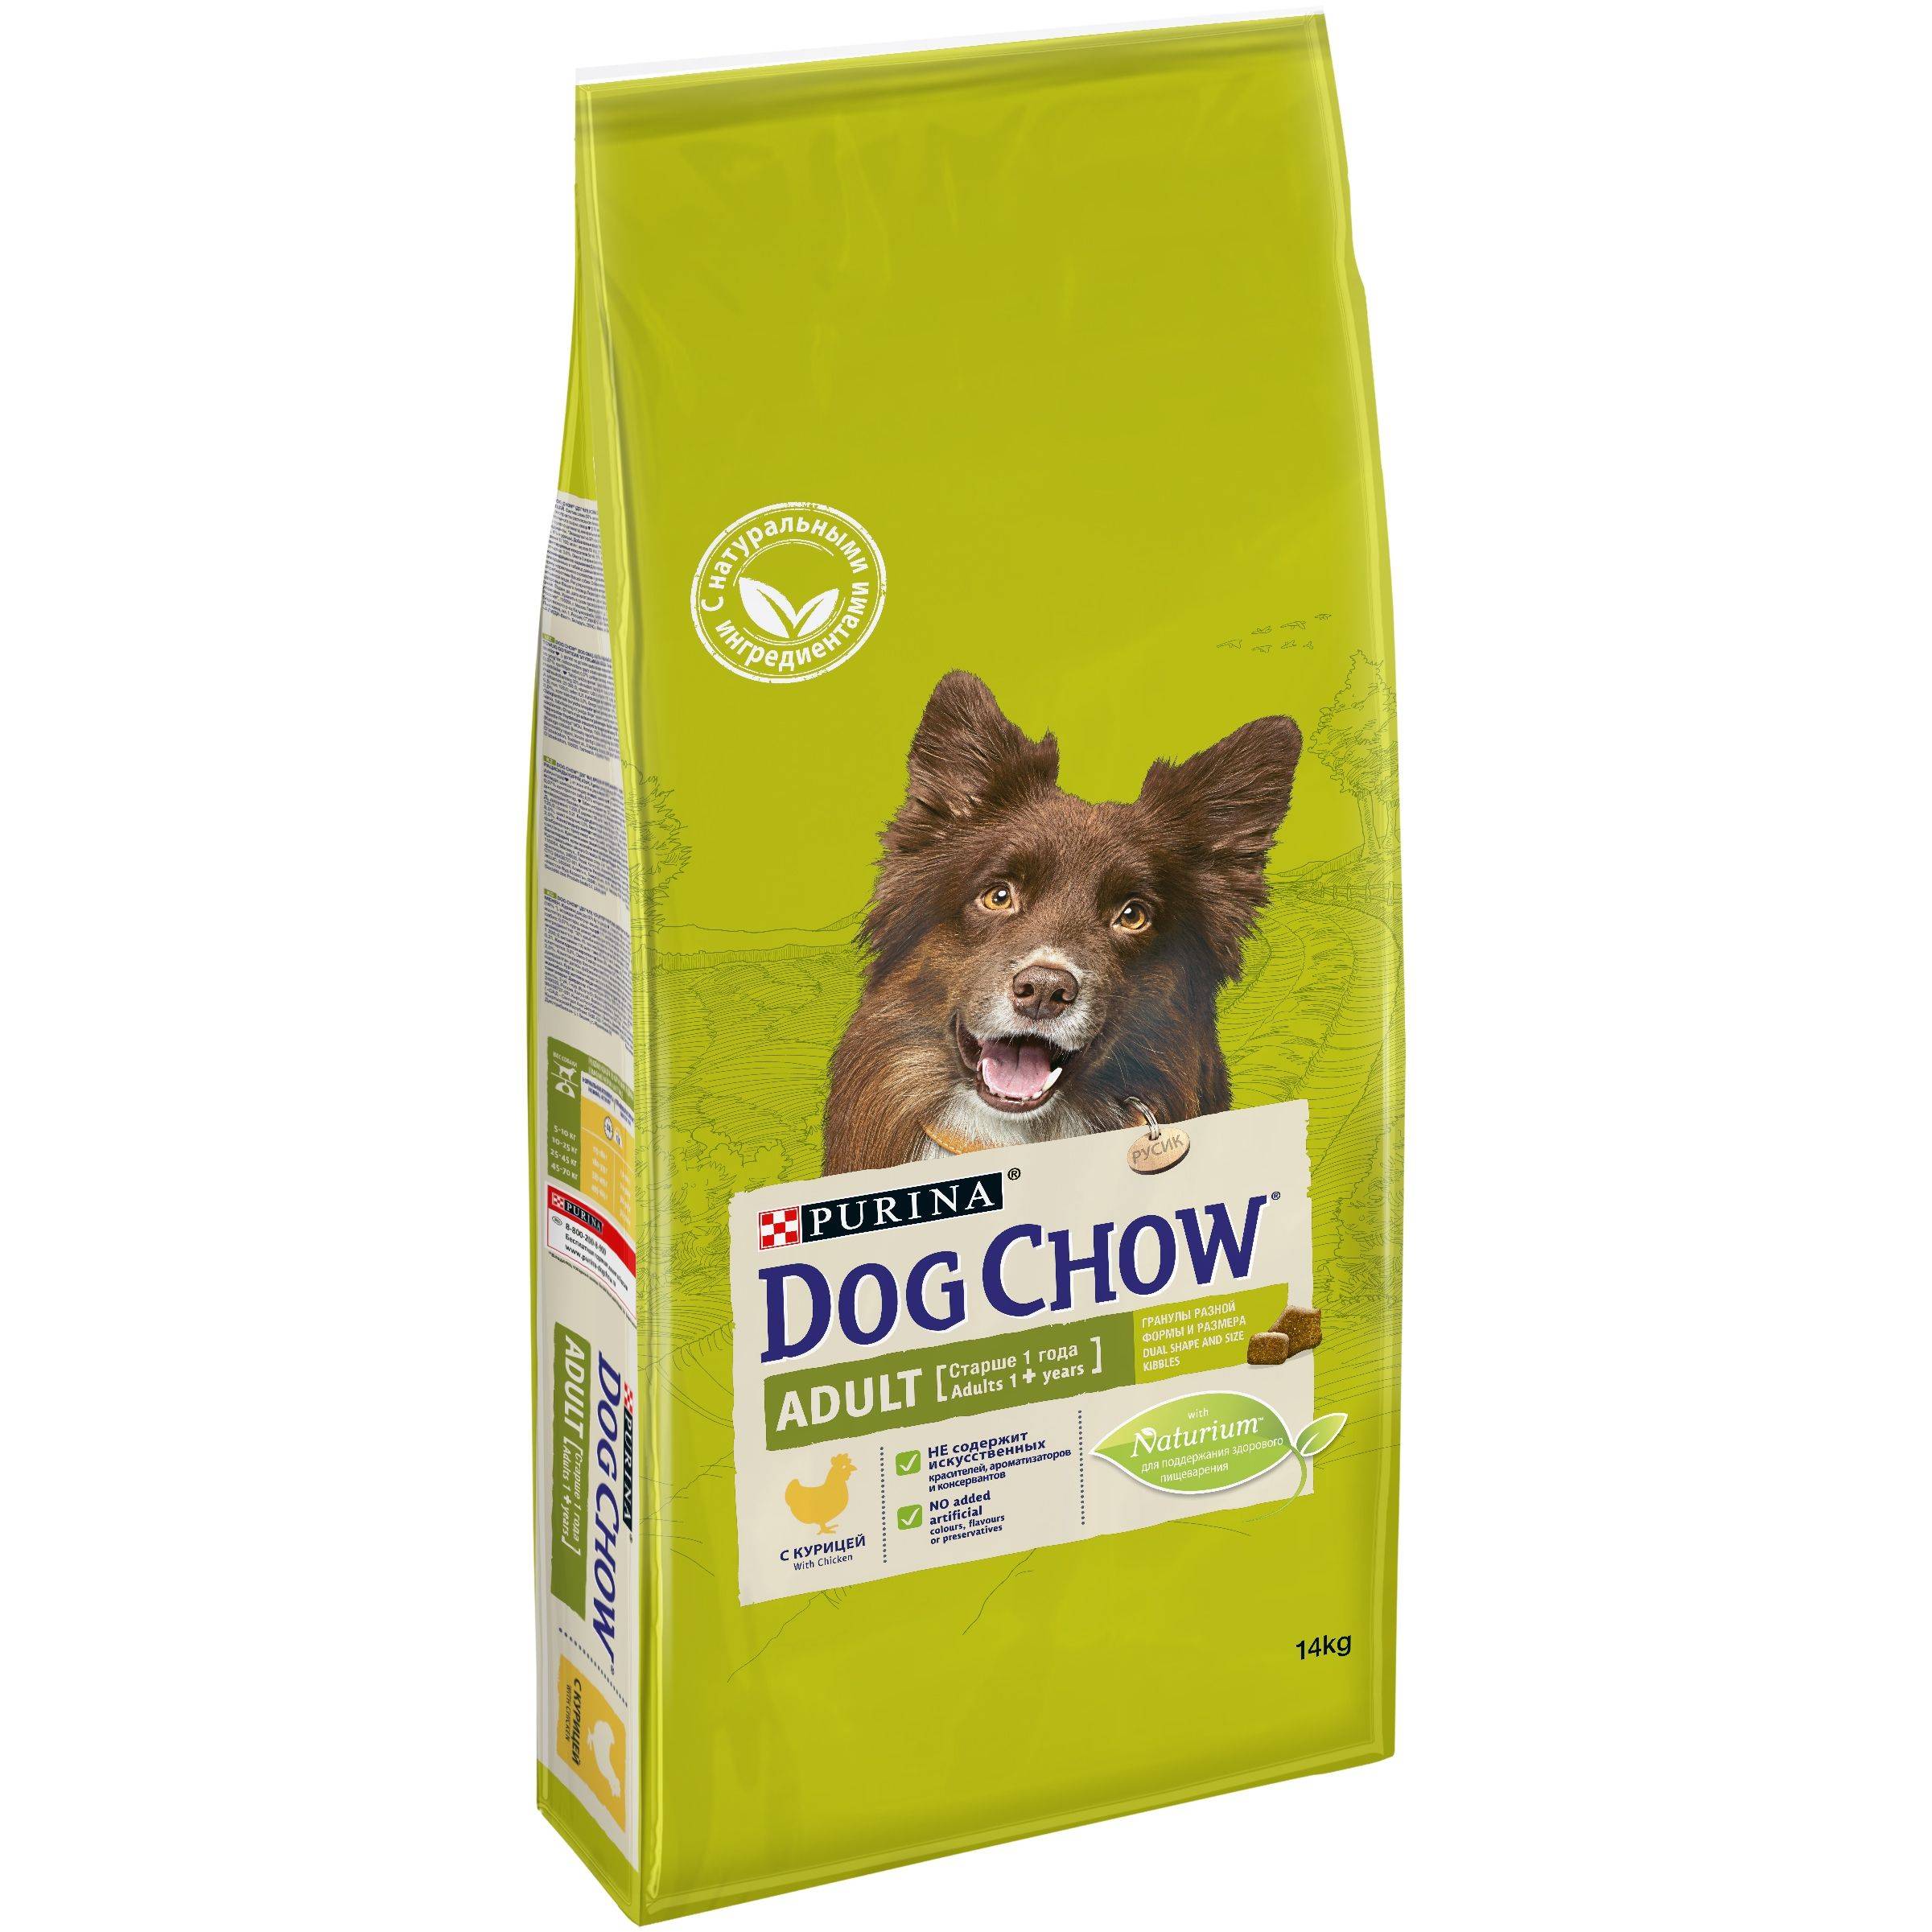 Дог чау корм для собак: отзывы ветеринаров и мнение потребителей